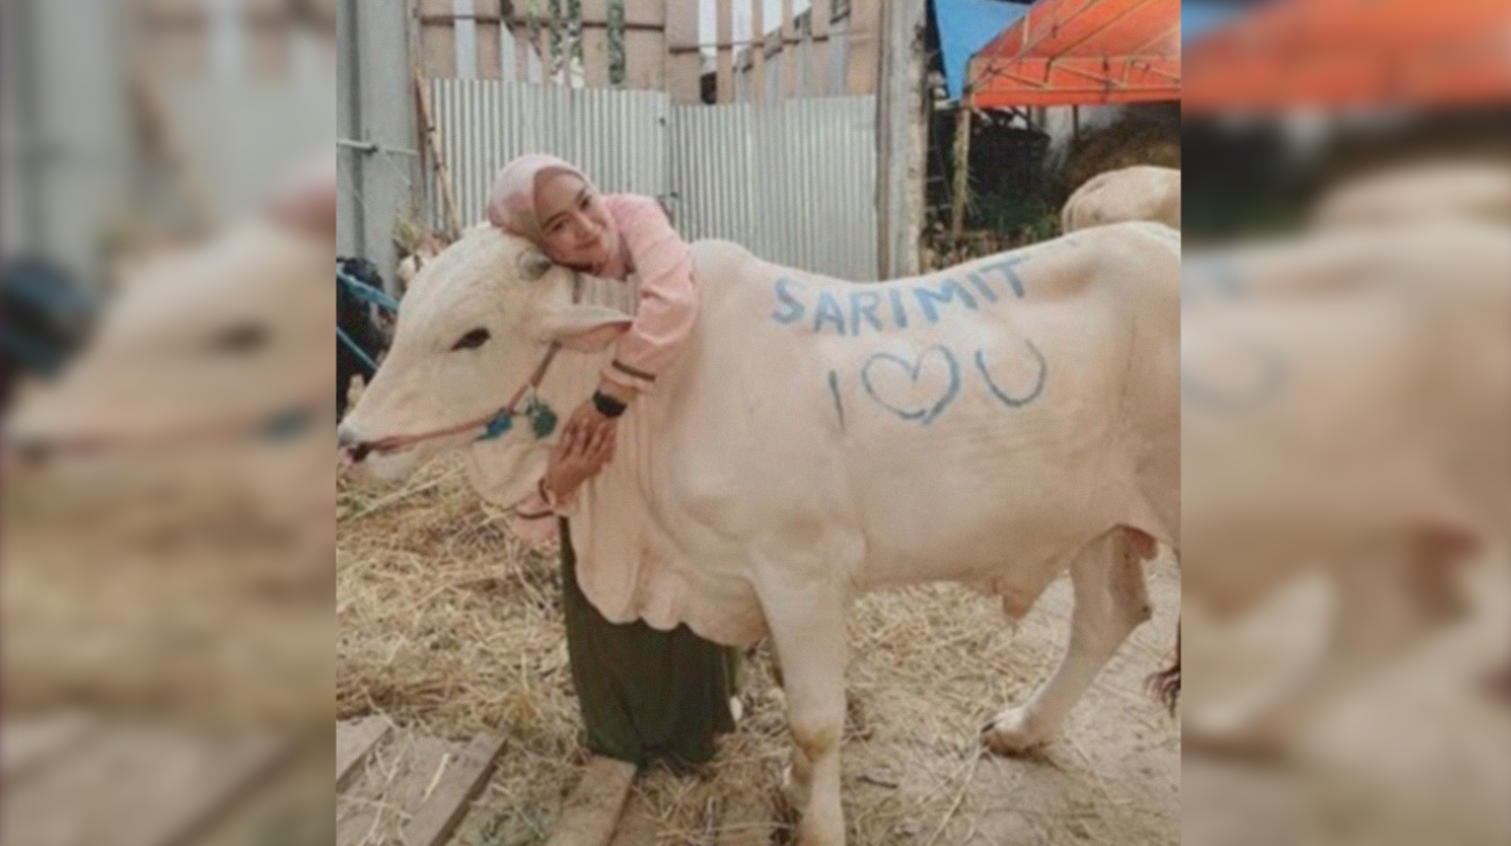 Ria Ricis foto bersama sapi miliknya sebelum disembelih pada Idul Adha hari ini, Minggu 11 Agustus 2019.